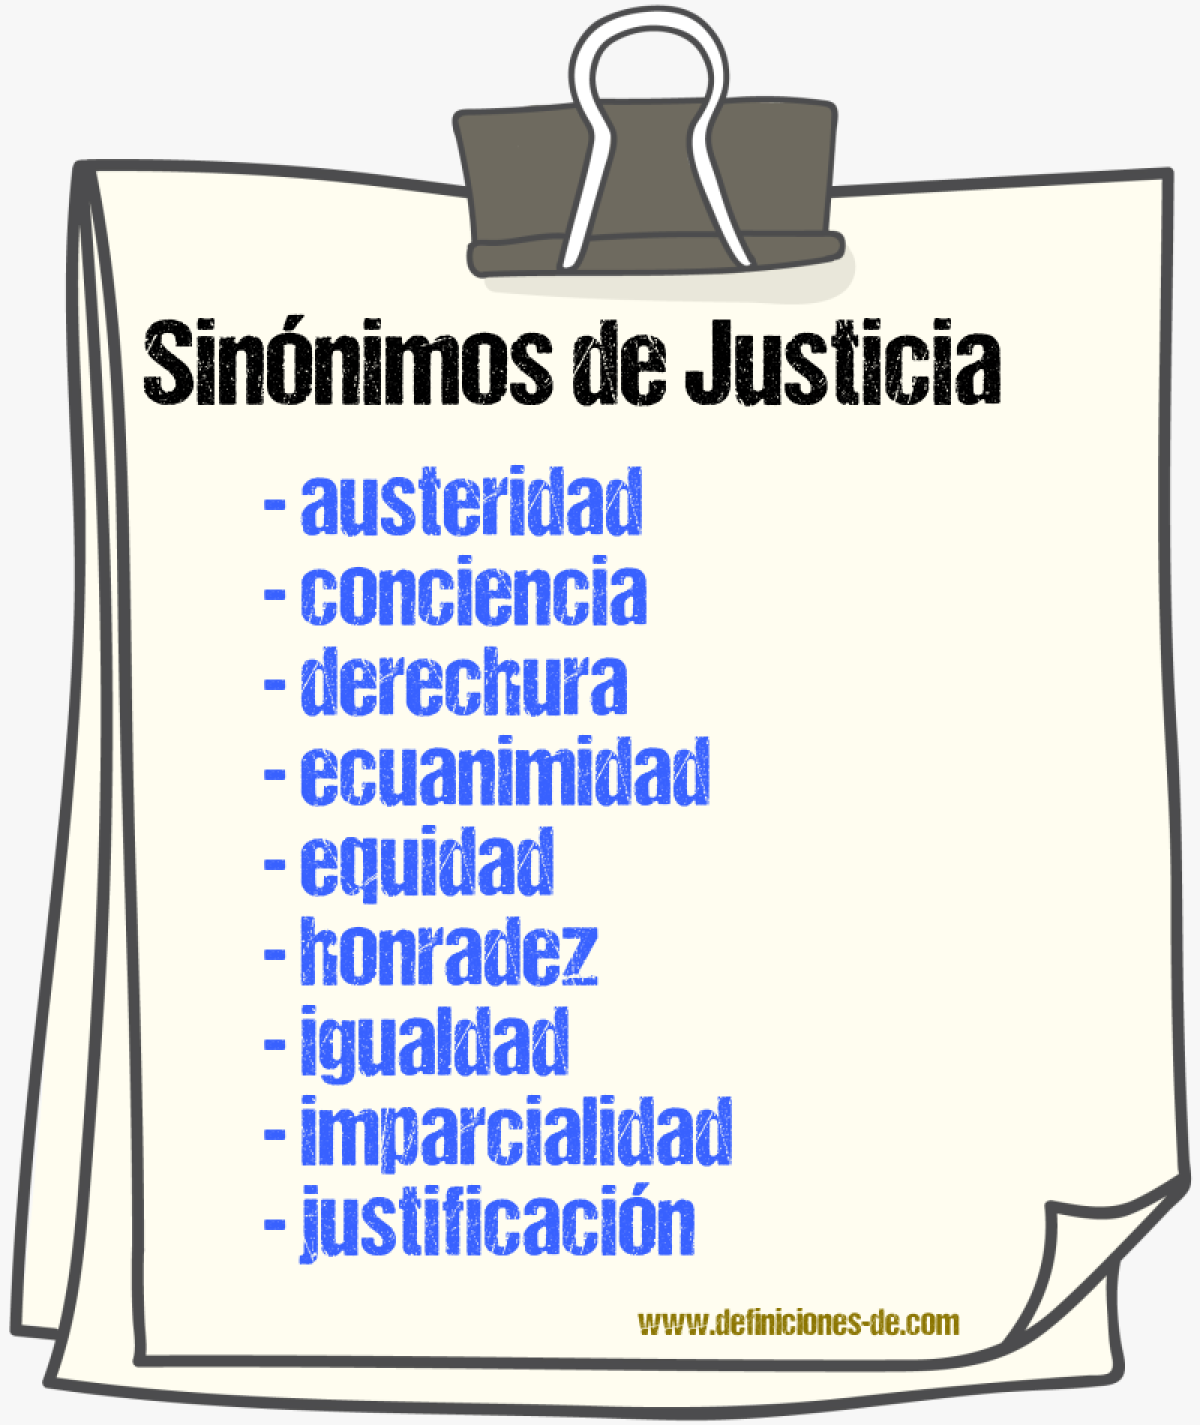 Sinónimos de justicia